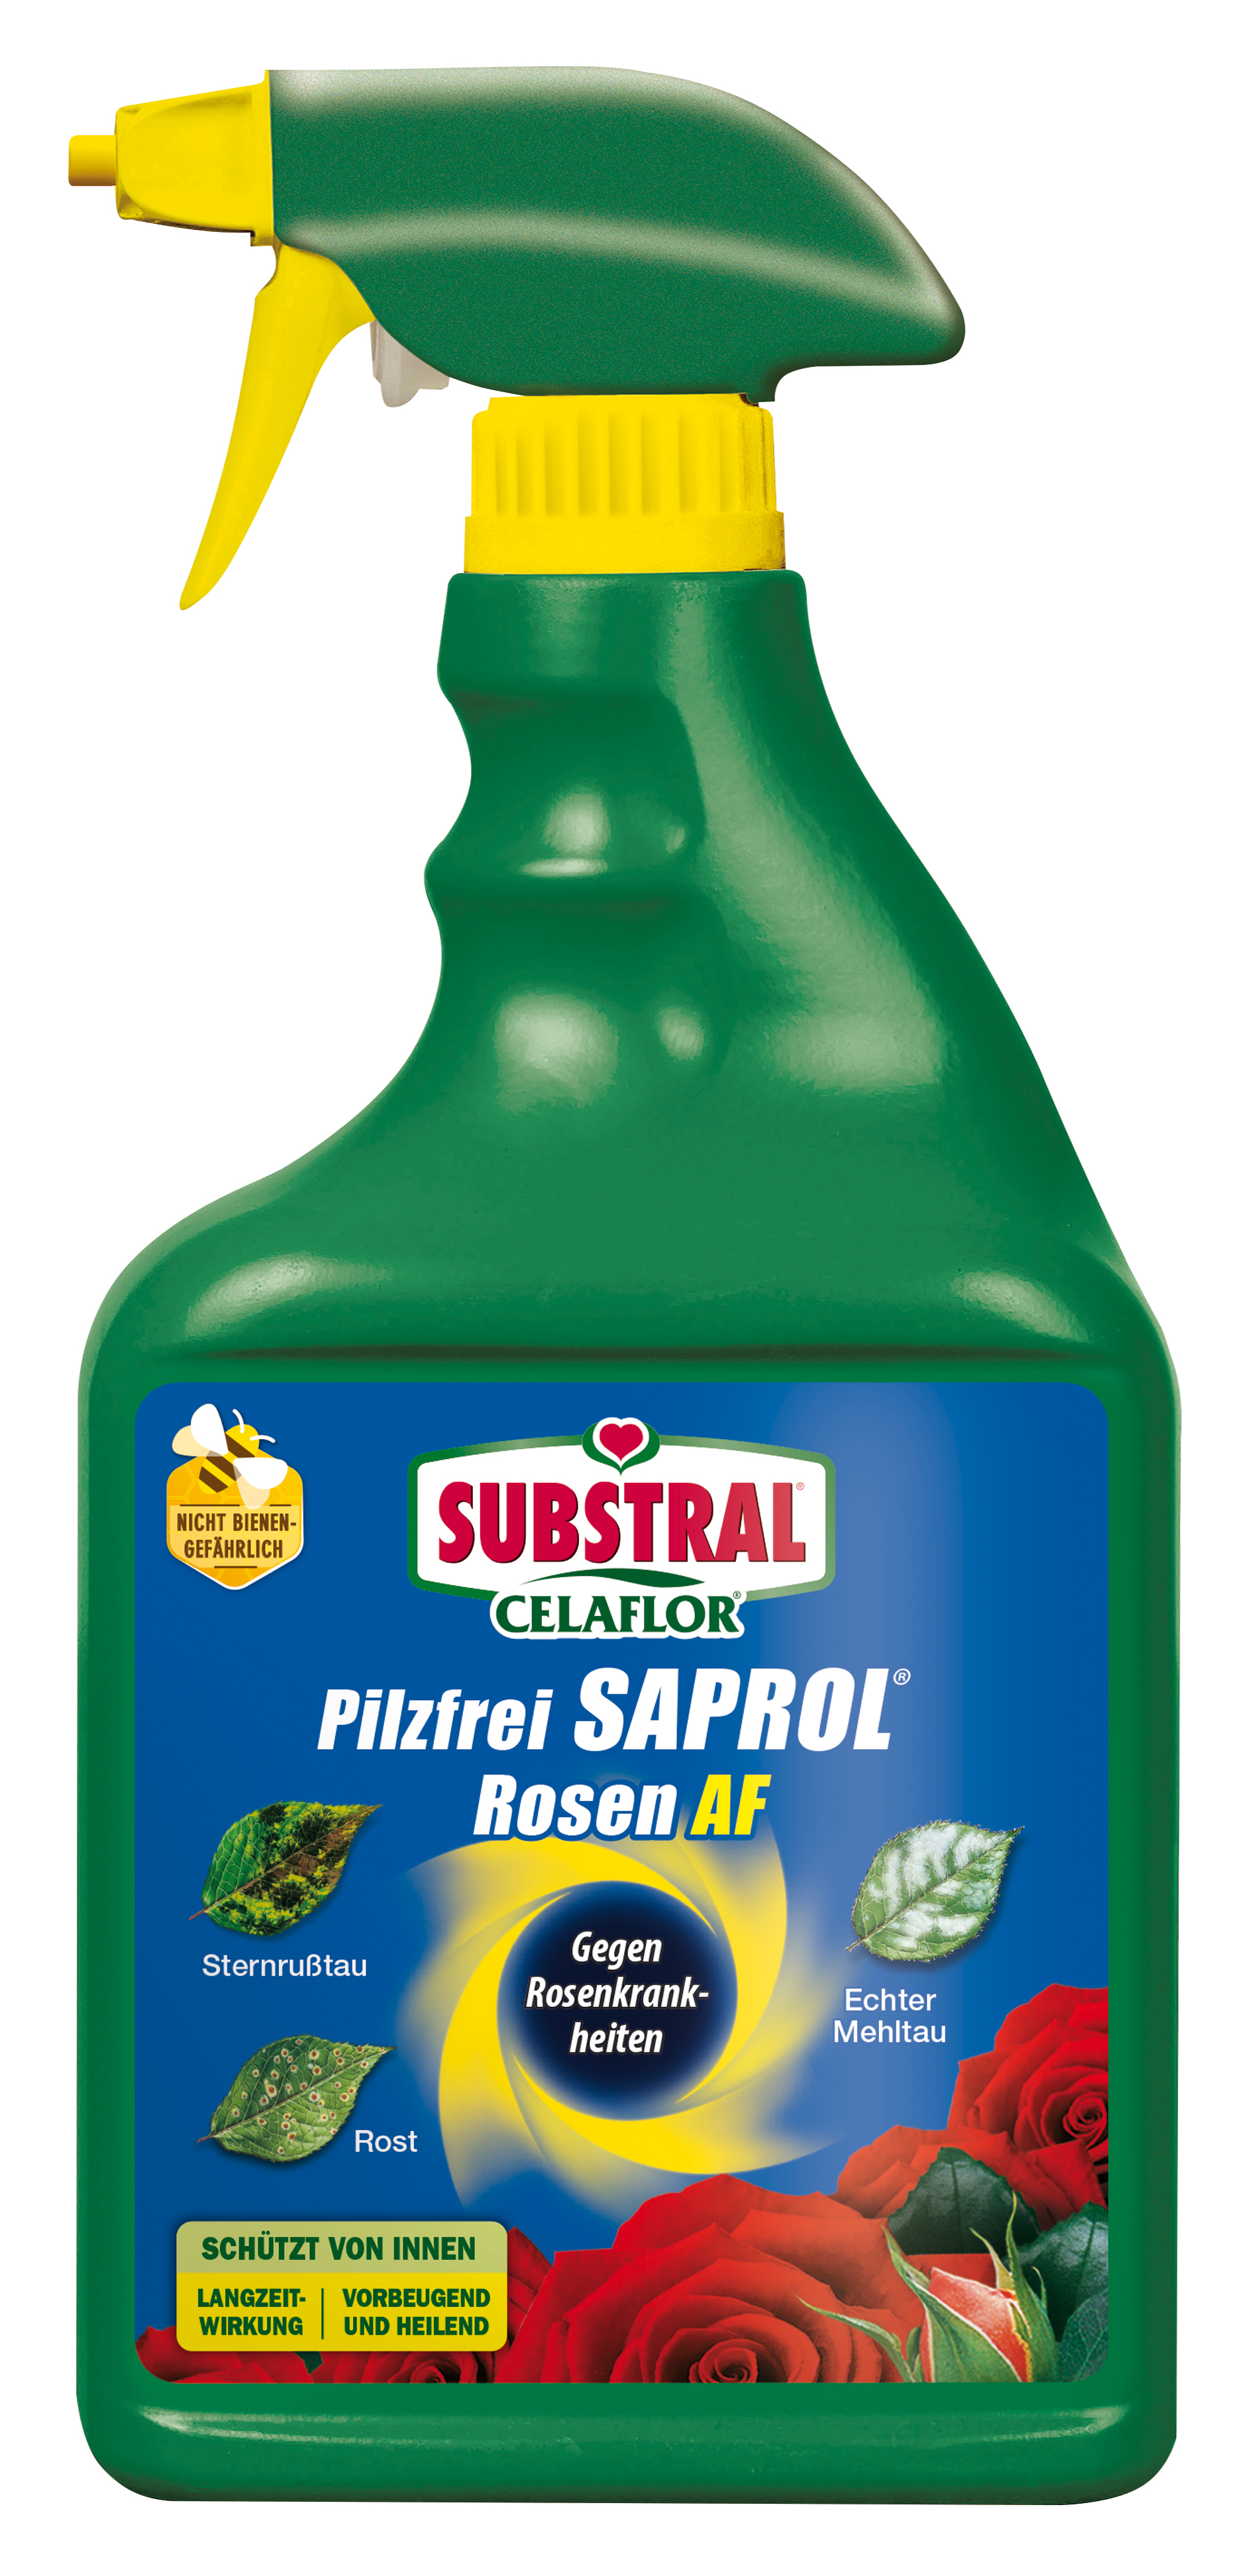 CELAFLOR Substral Pilzfrei Saprol Rosen AF 750ml Celaflor -B4-